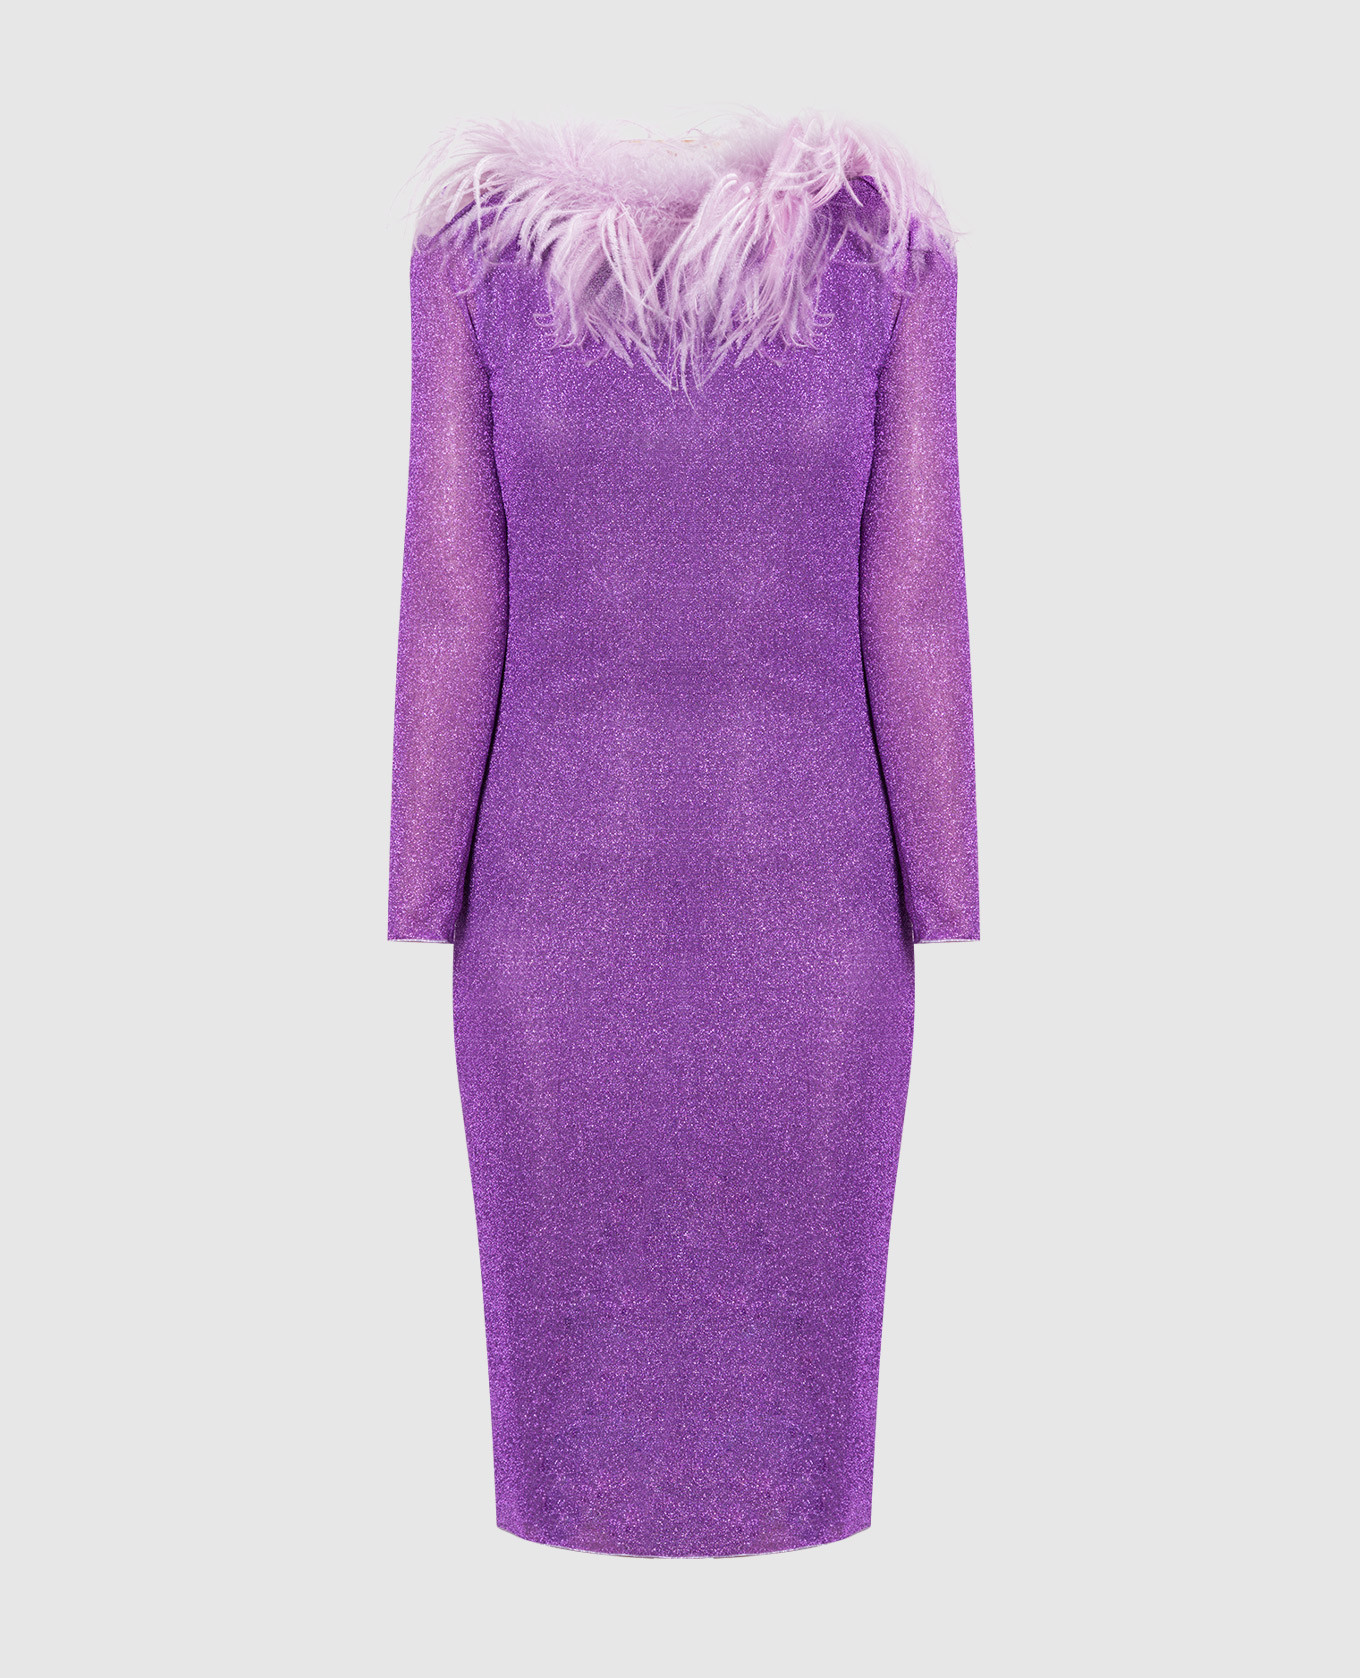 Фиолетовое платье HS22 Lumiere Plumage со страусиными перьями